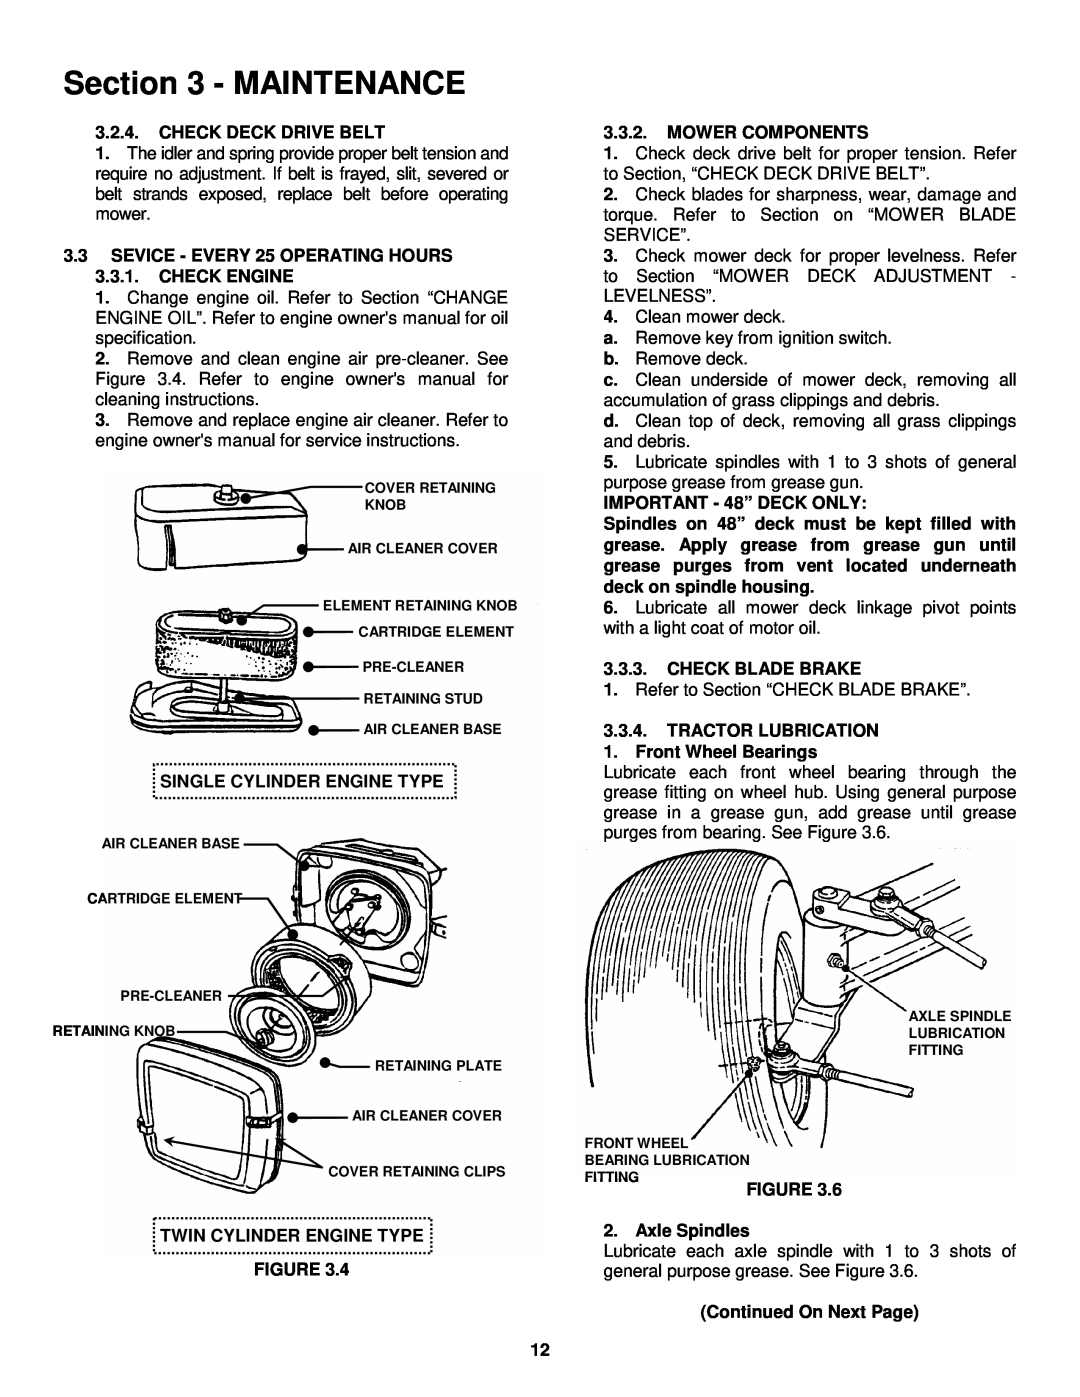 Snapper LT160H42FBV2, LT180H48FBV2 important safety instructions Maintenance, Check Deck Drive Belt 